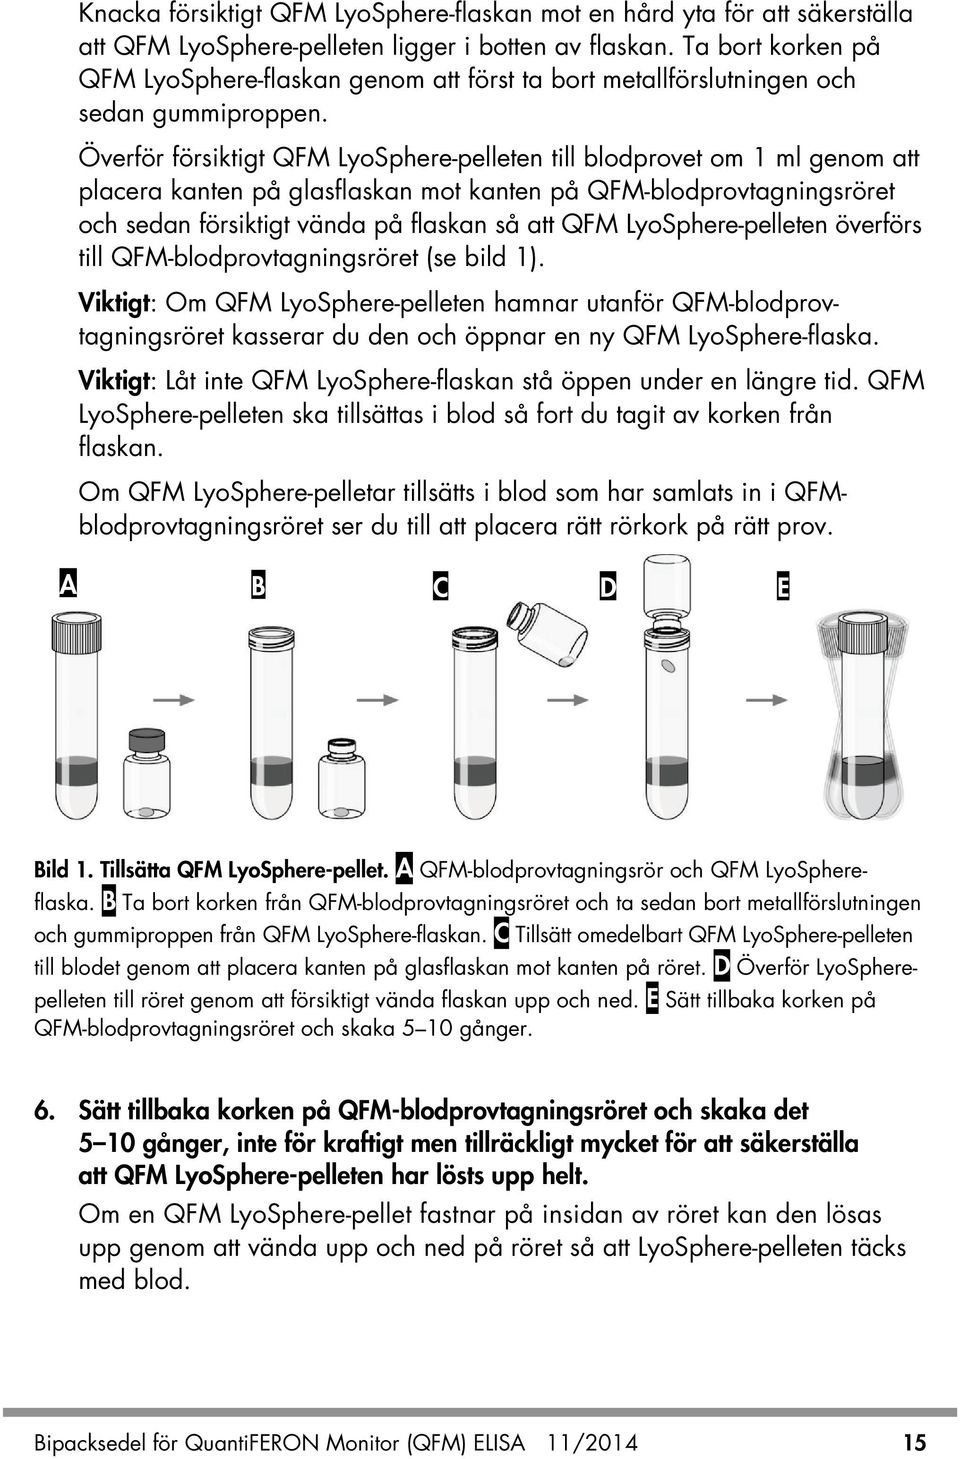 Överför försiktigt QFM LyoSphere-pelleten till blodprovet om 1 ml genom att placera kanten på glasflaskan mot kanten på QFM-blodprovtagningsröret och sedan försiktigt vända på flaskan så att QFM